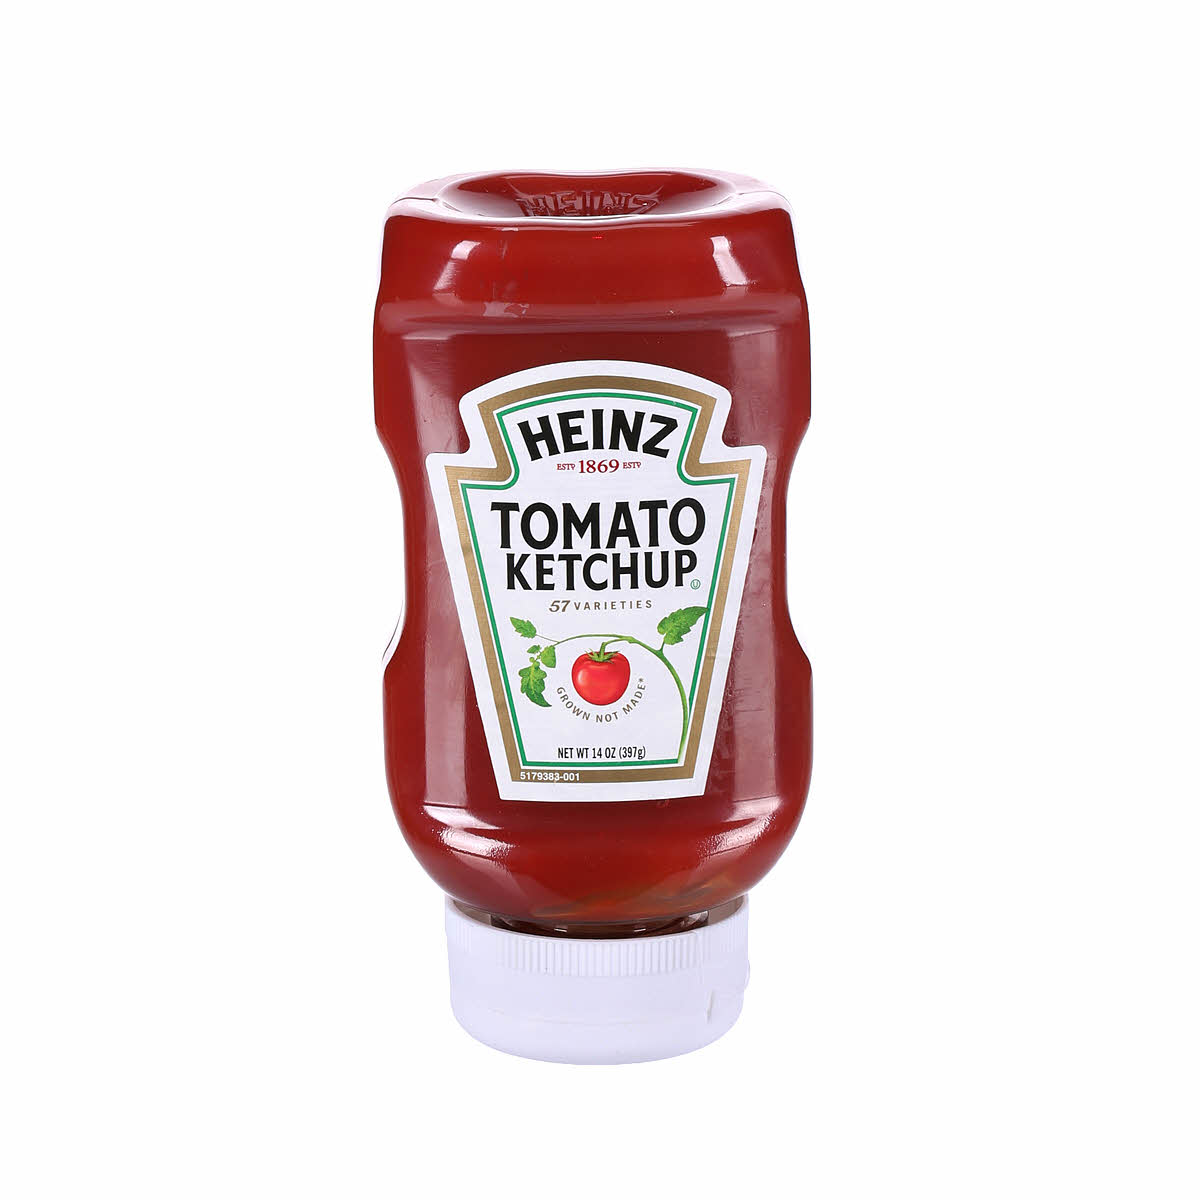 Heinz Tomato Ketchup, 14 Oz, Ketchup